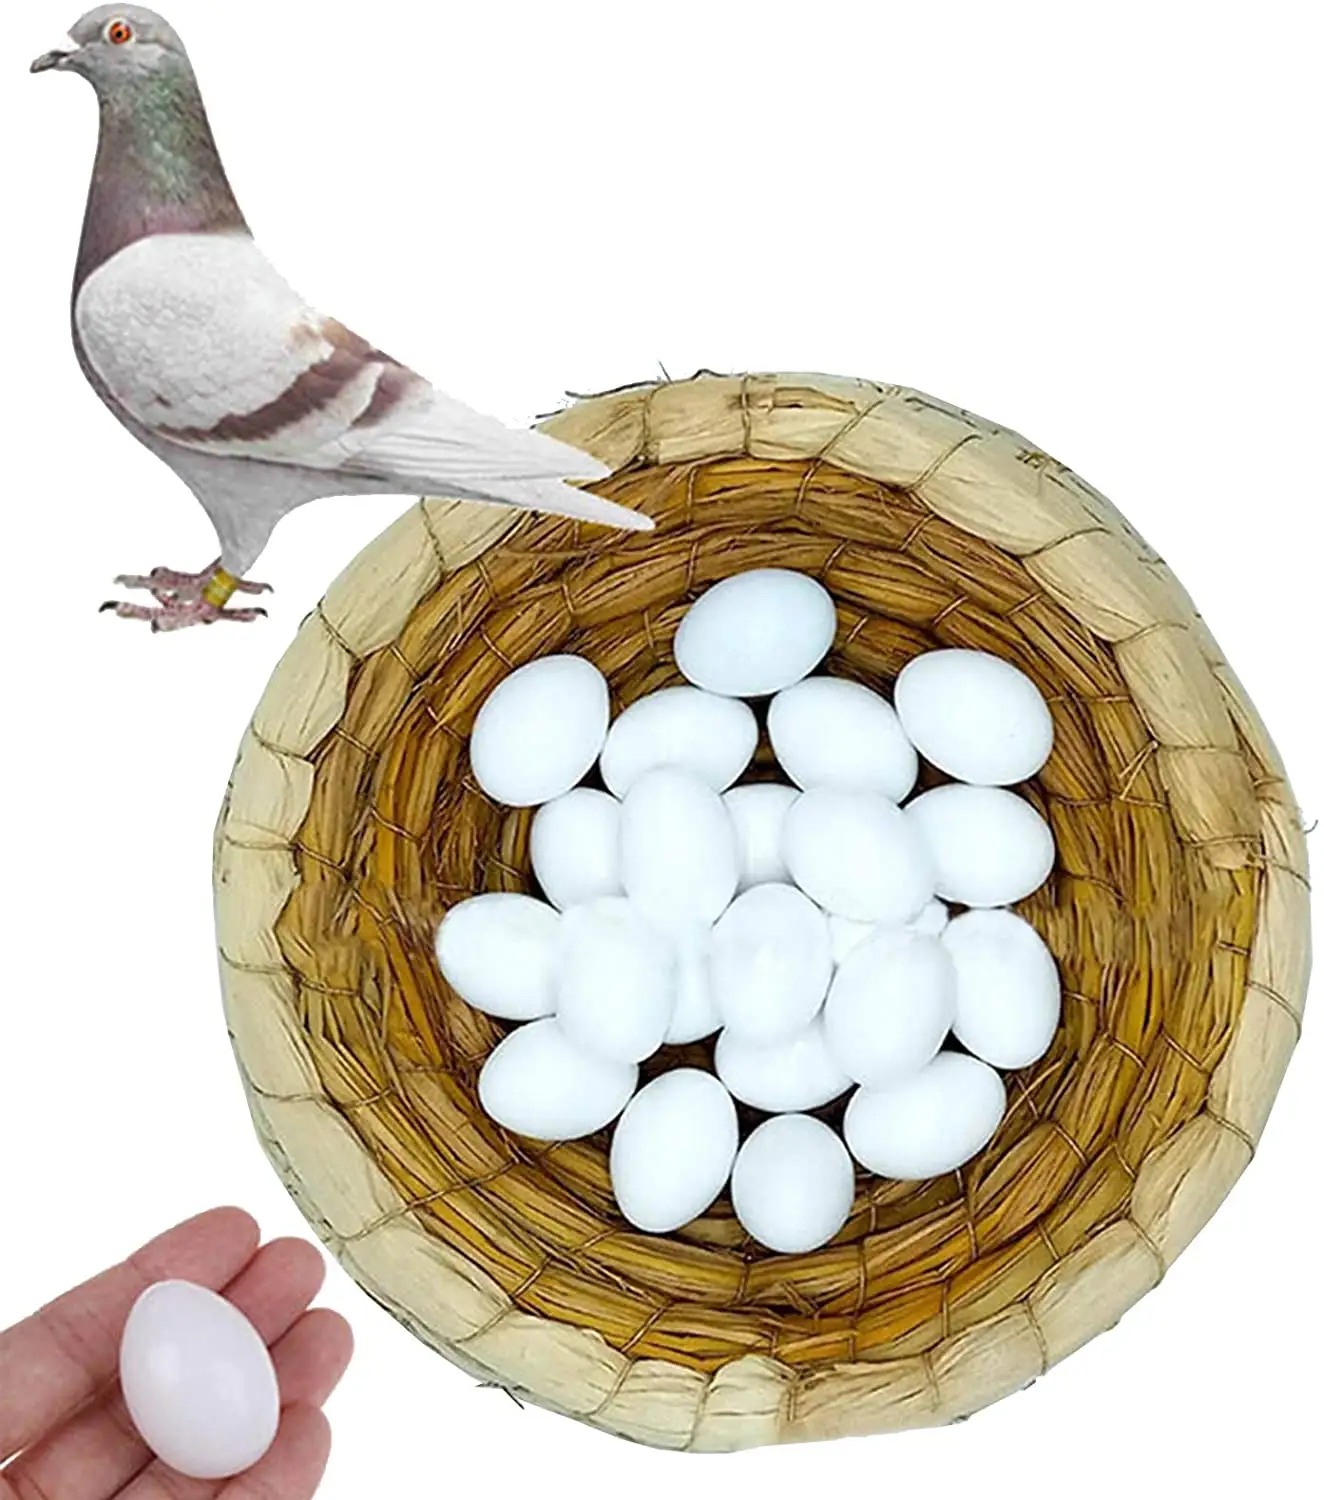 Faux œufs de Pigeon pour l'éclosion de corée, 7 pièces, élimination des oiseaux de perroquet et autres petits oiseaux, certification solide, triche les oiseaux pour arrêter la couche